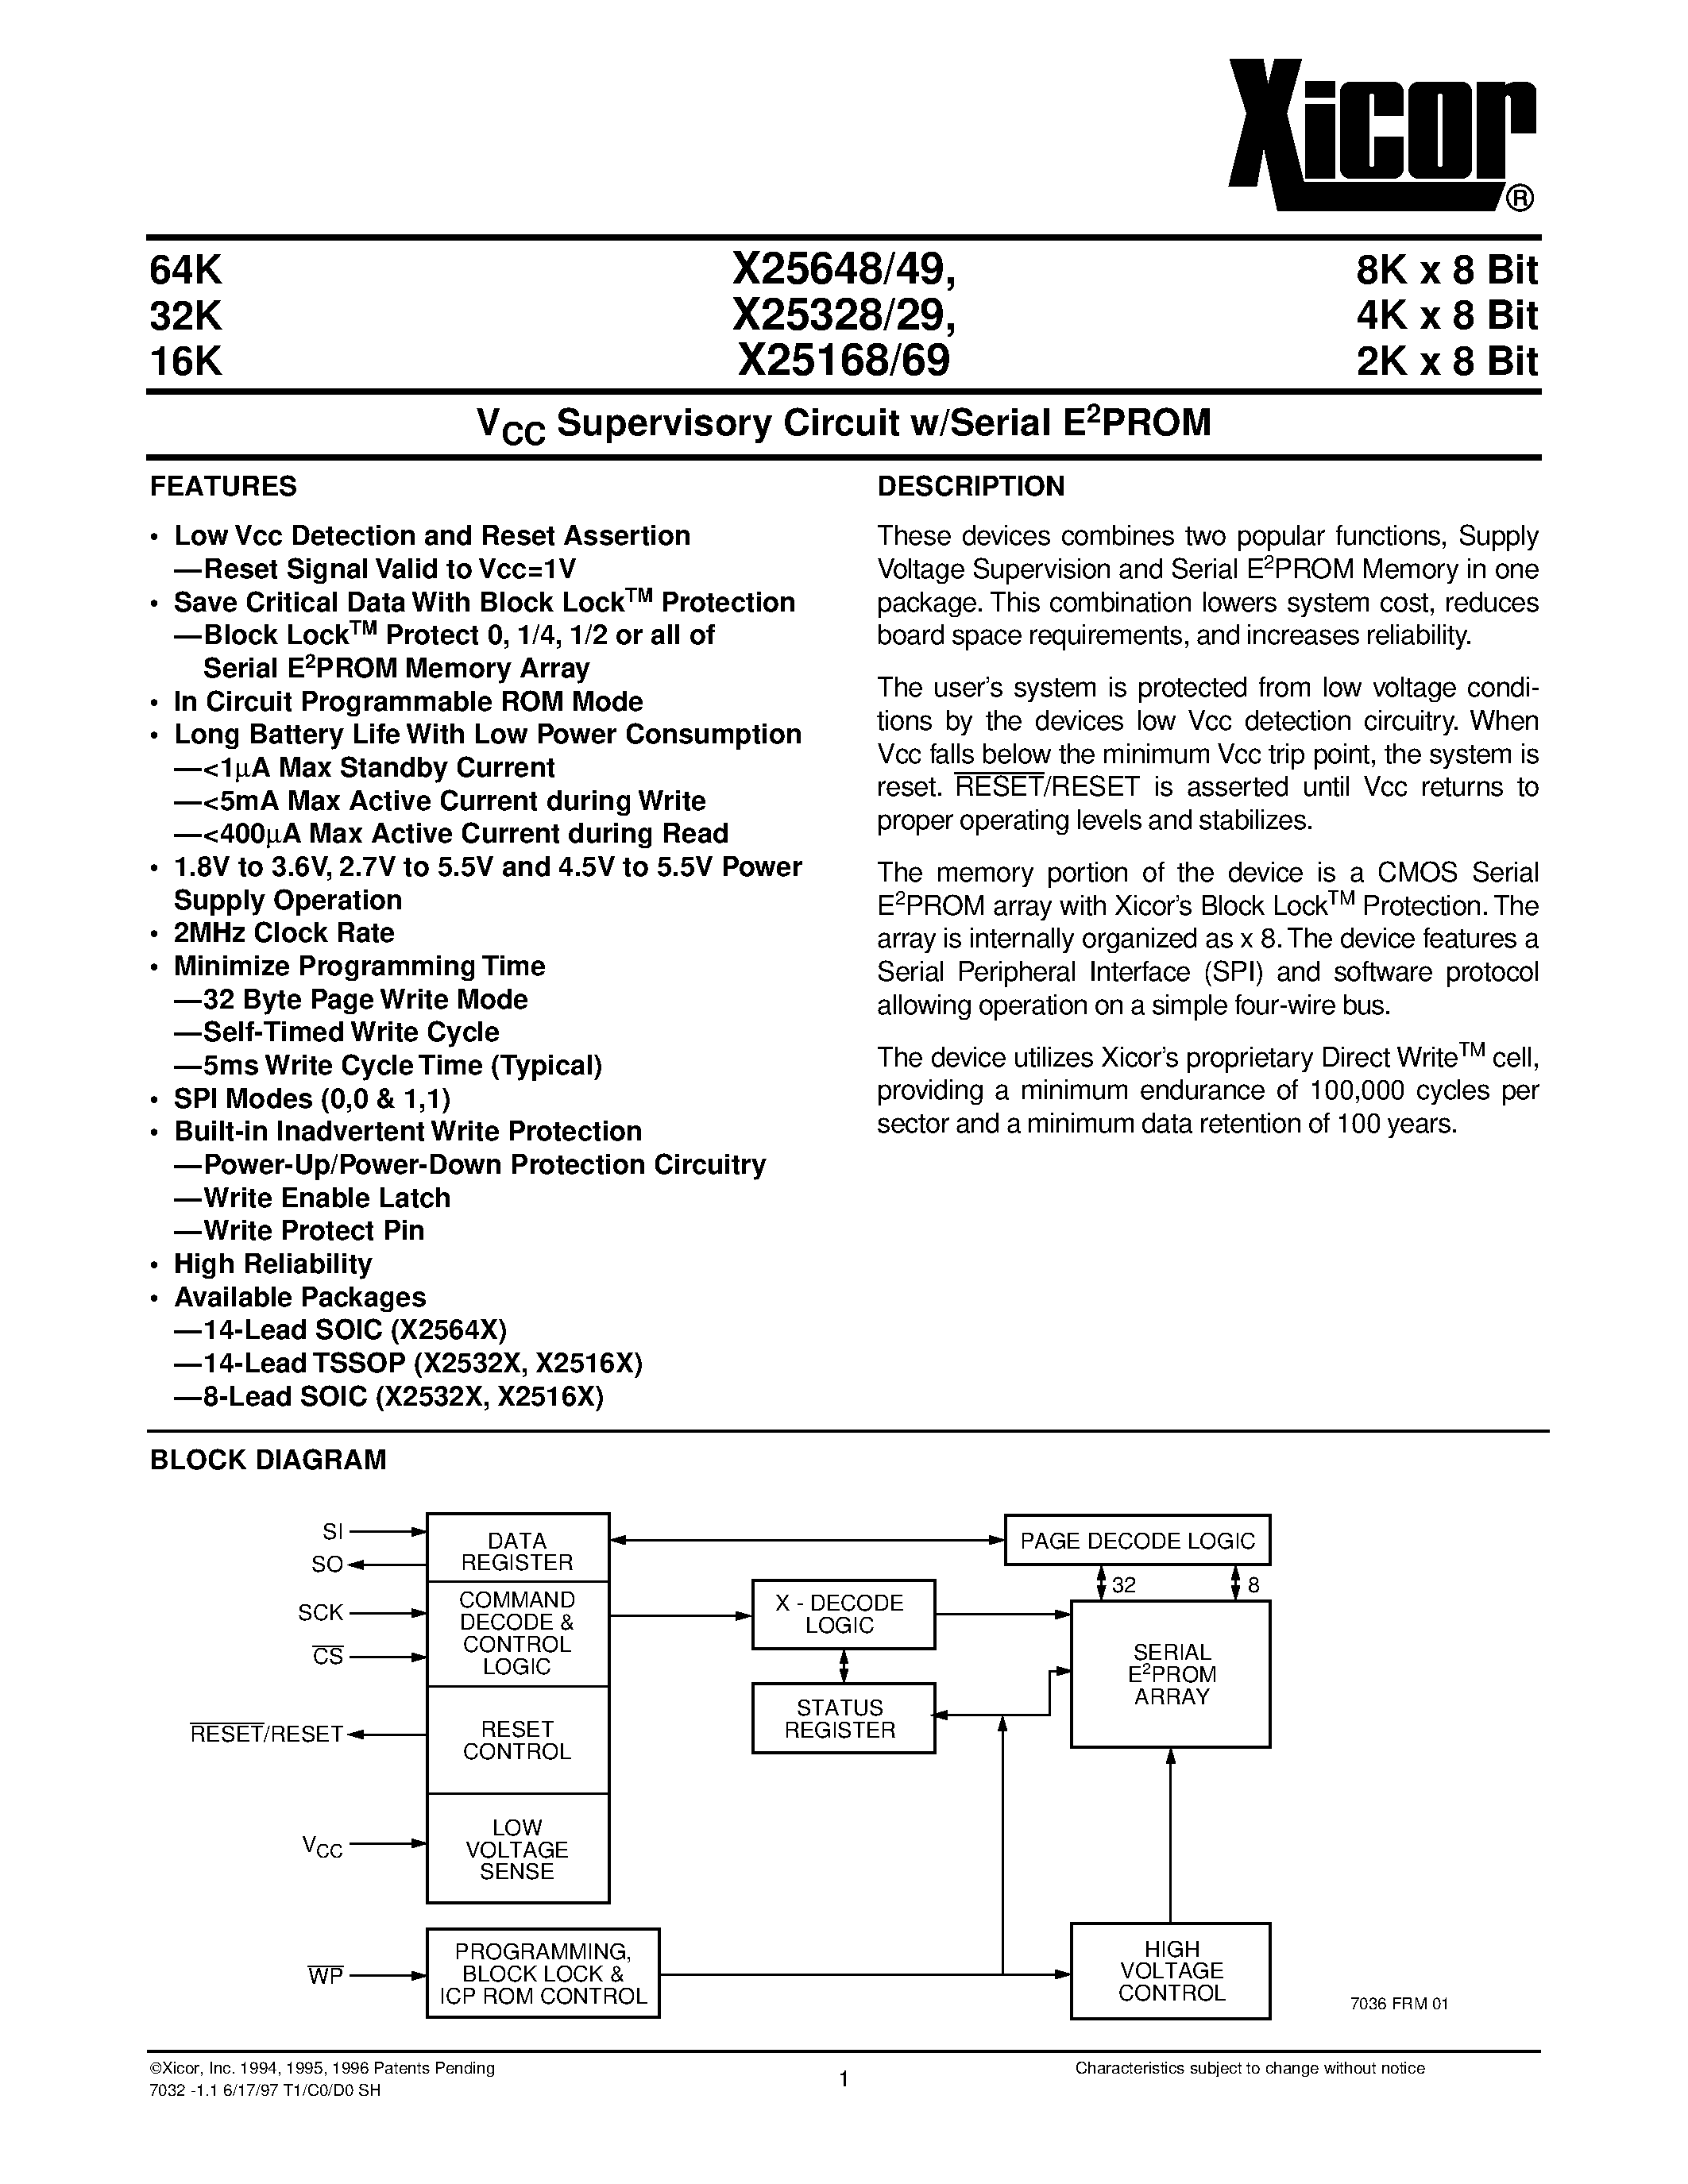 Даташит X25648S14-1.8 - V CC Supervisory Circuit w/Serial E 2 PROM страница 1